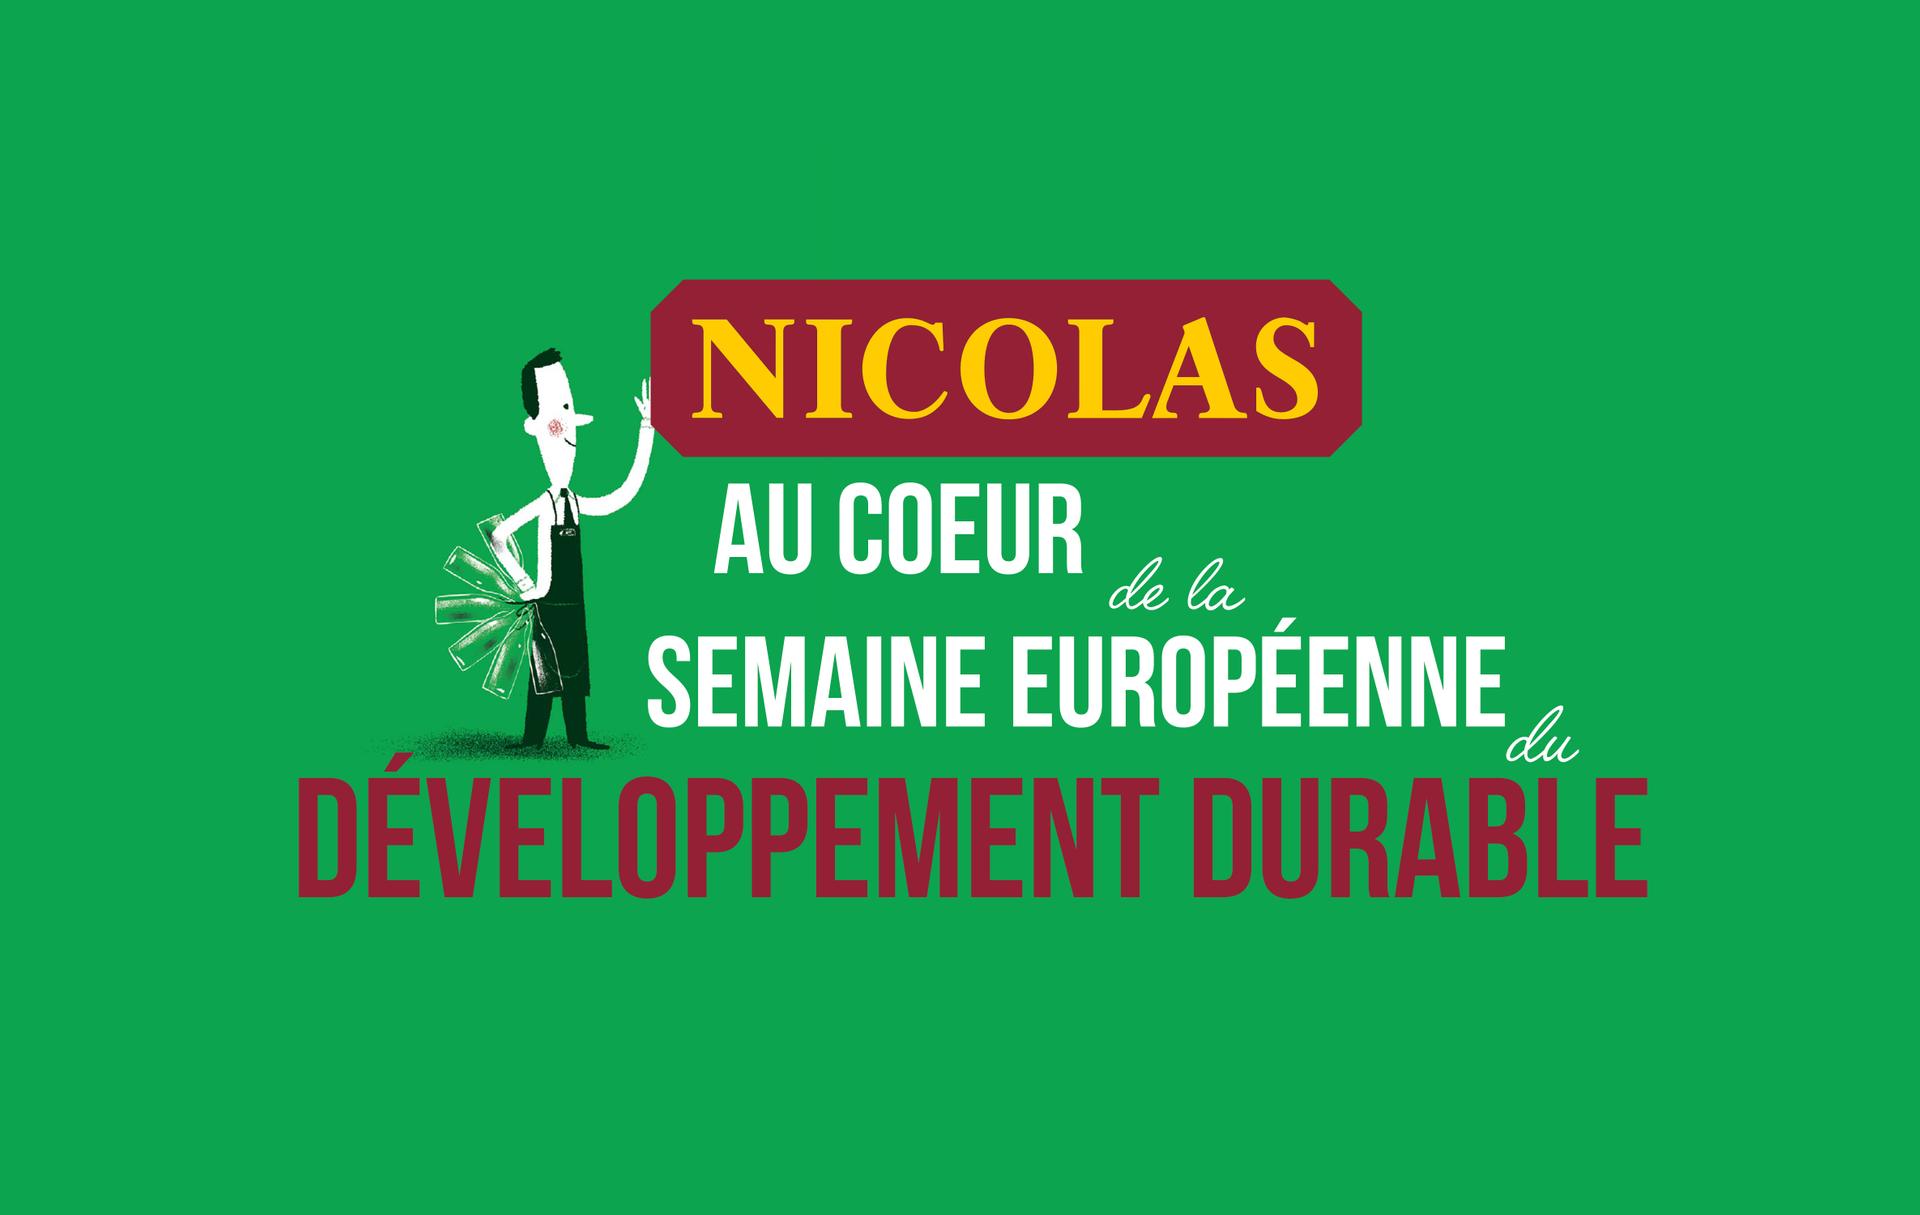 Nicolas au cœur de la semaine européenne du développement durable